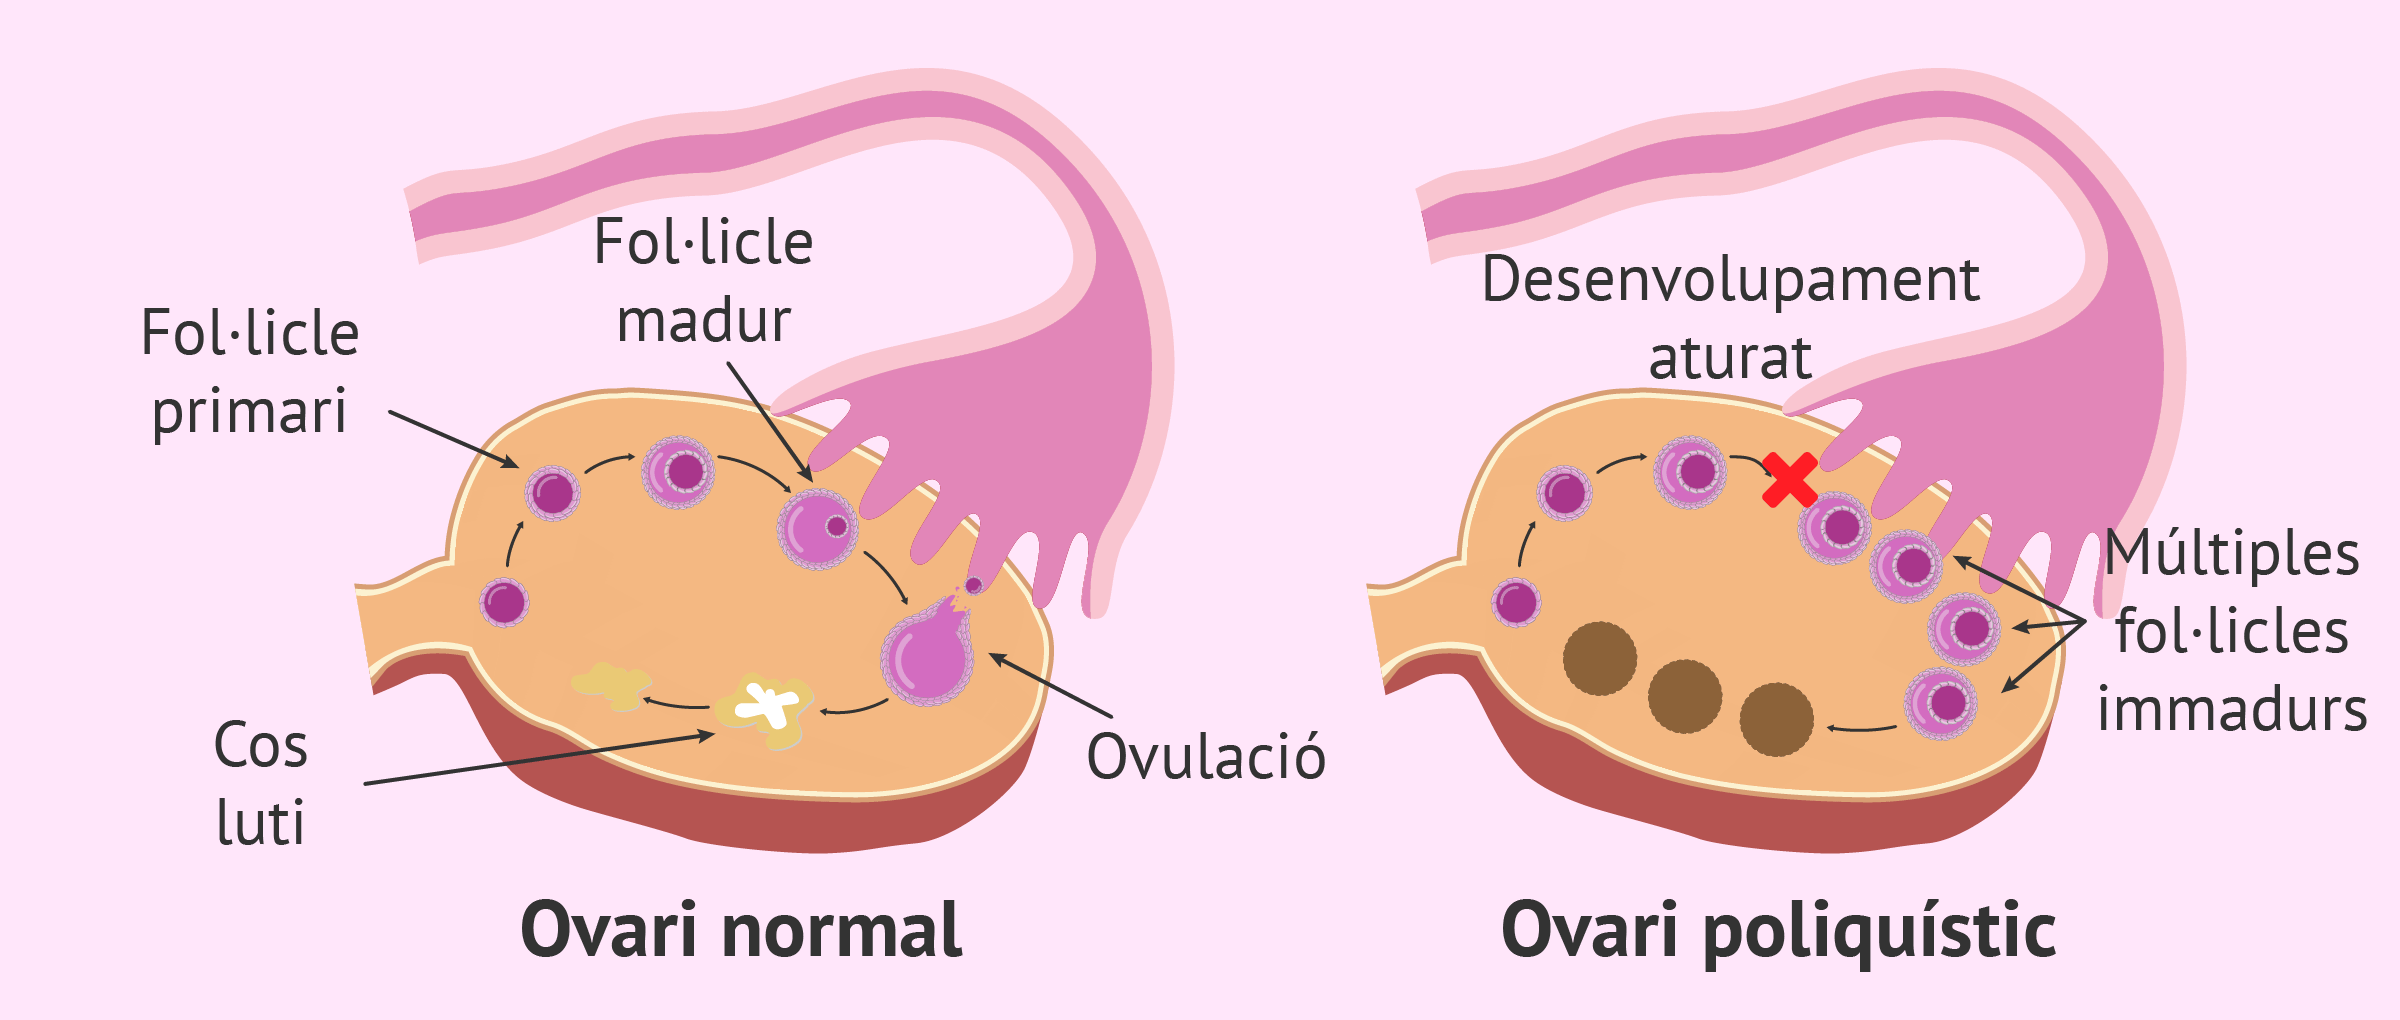 Como me detectaron el cáncer de ovarios